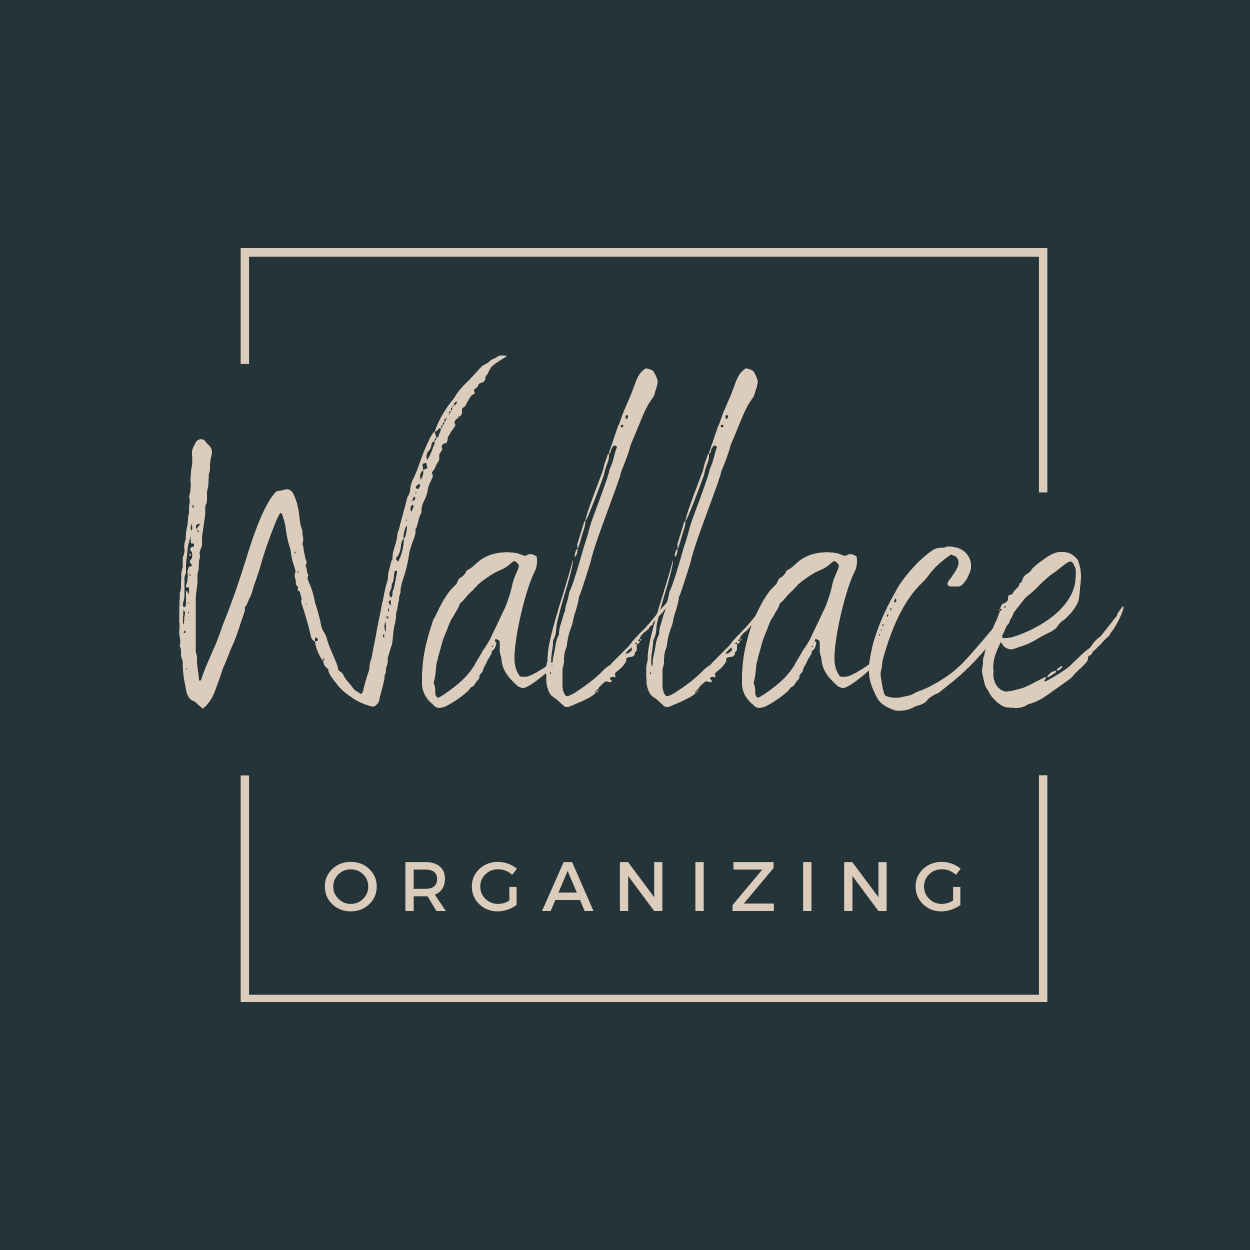 Wallace Organizing